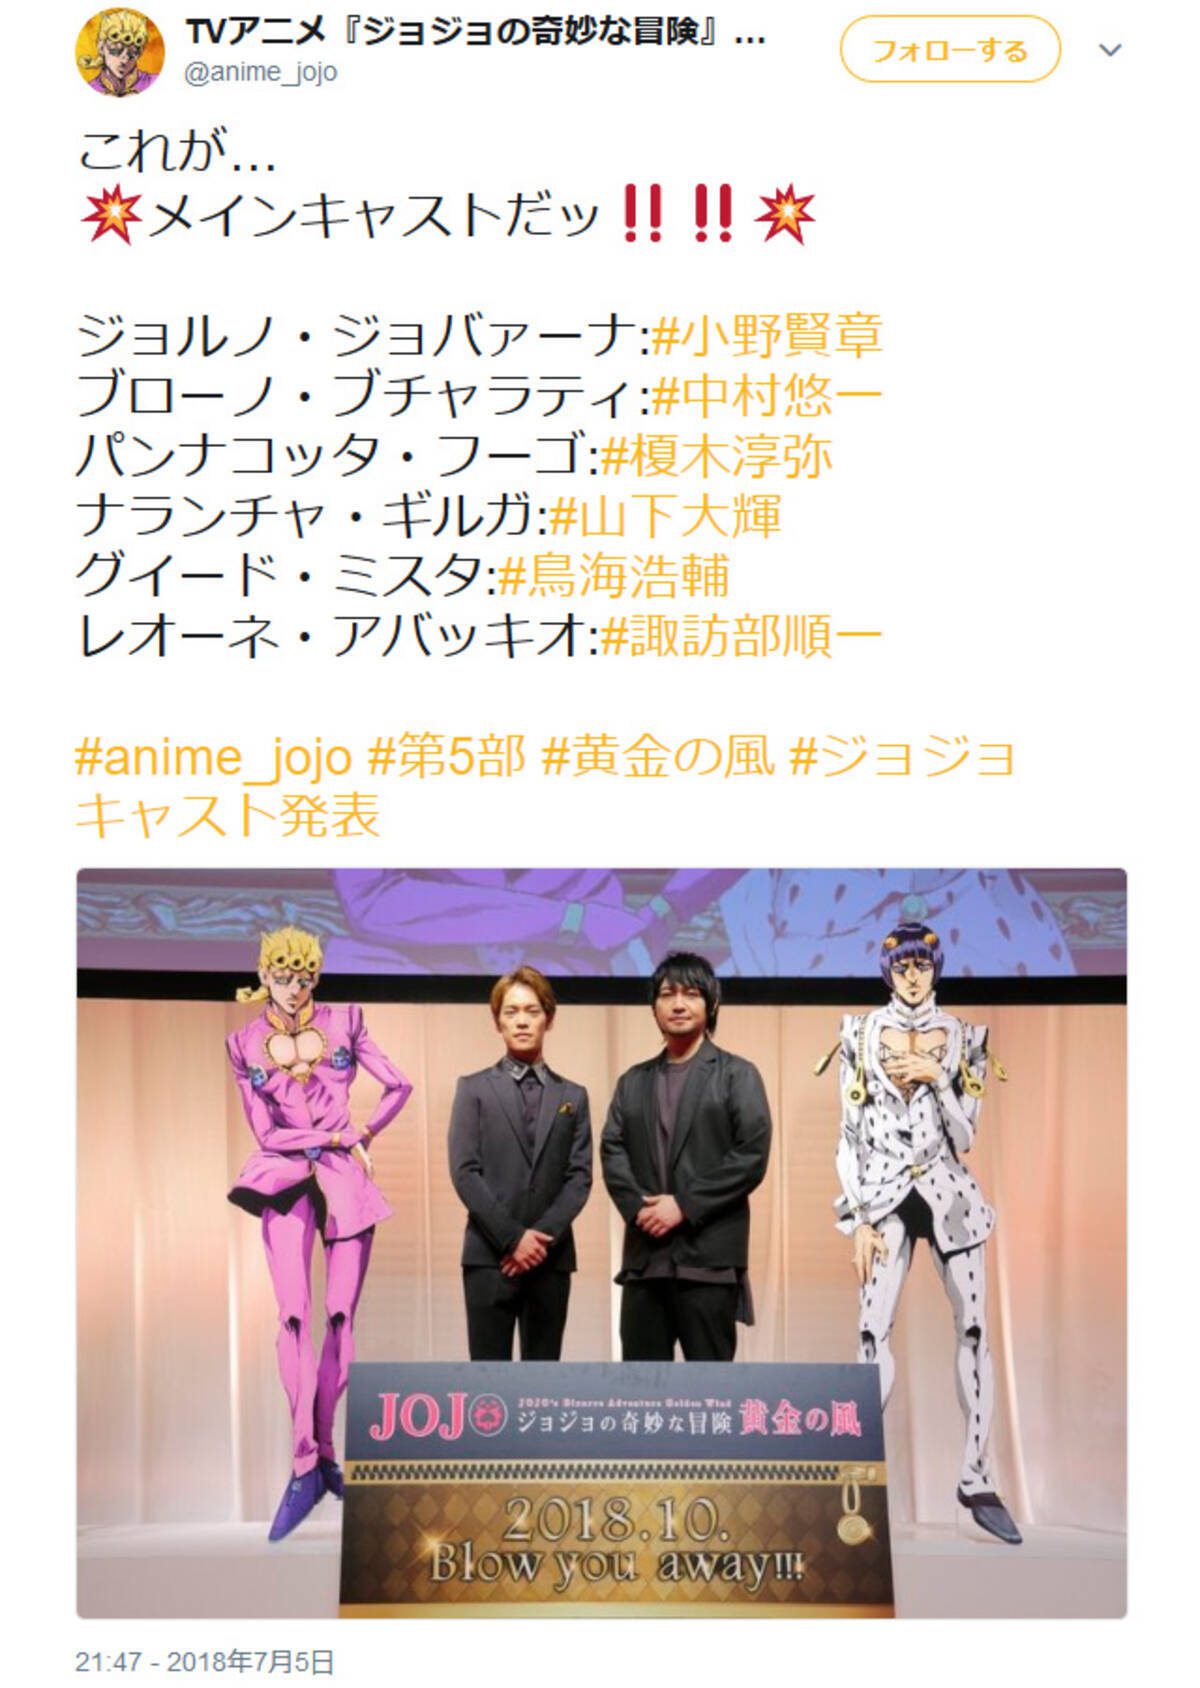 小野の奇妙な冒険 の声も Tvアニメ ジョジョ 第5部のジョルノ役は小野賢章さん 18年7月6日 エキサイトニュース